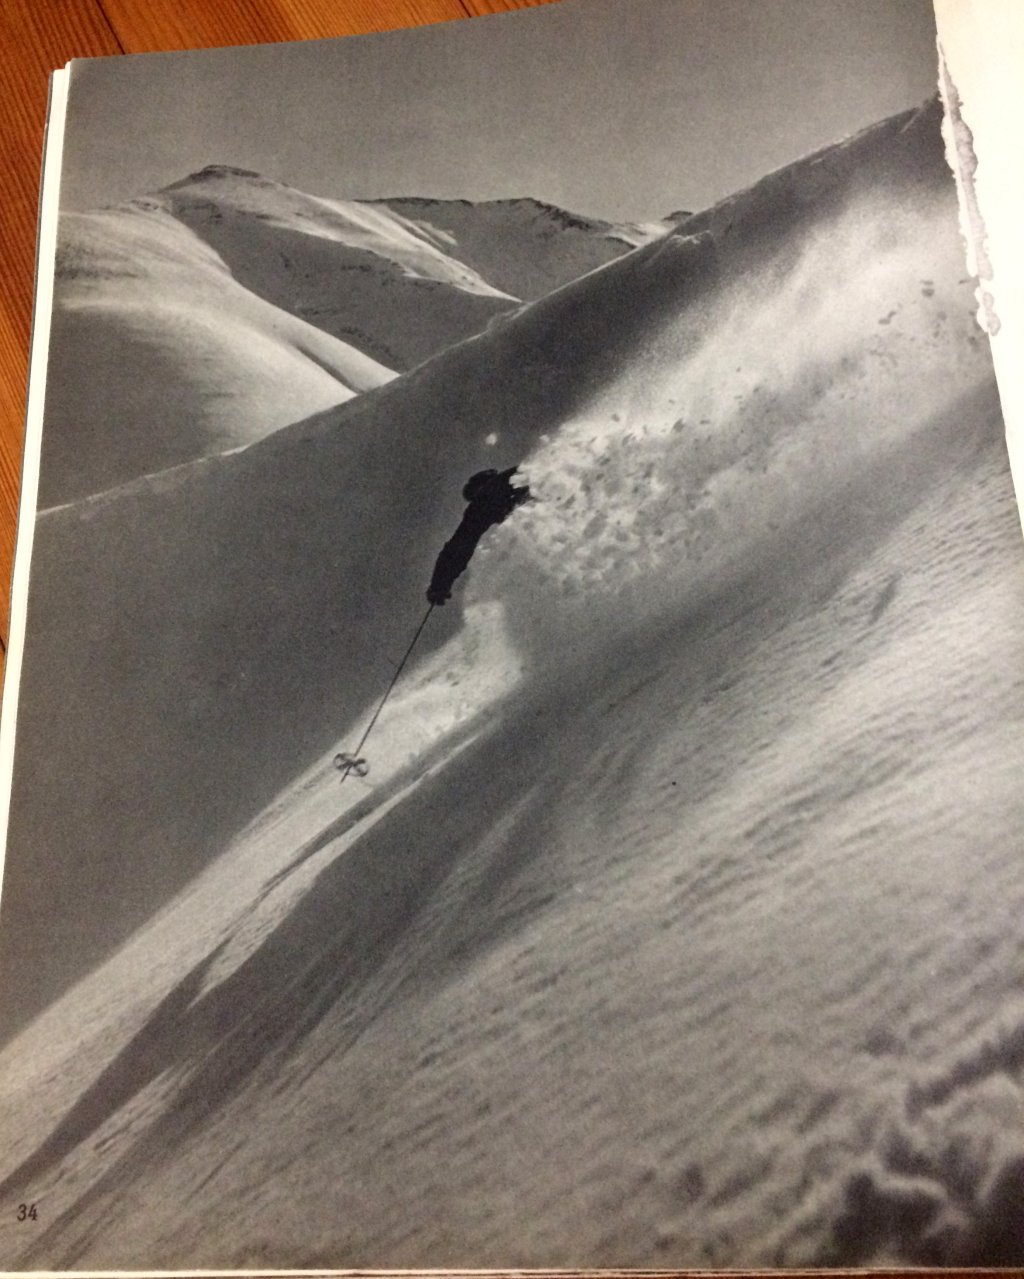 Emil Allais - La Methode Francais de Ski, photo from 1937.